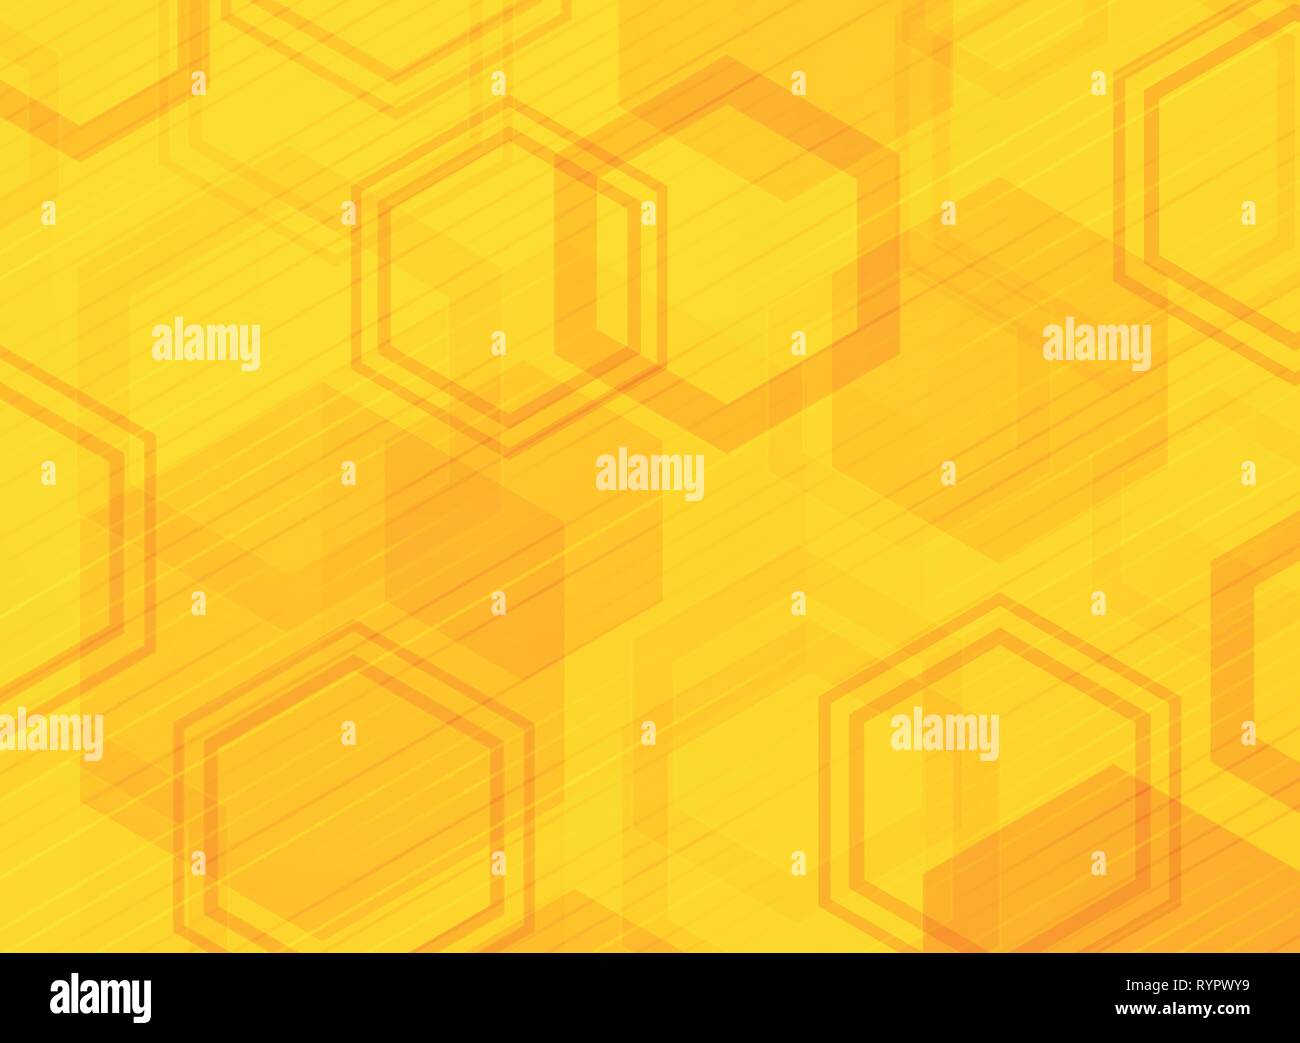 La technologie Résumé motif hexagonal jaune fond design moderne. La décoration en couleur à l'aide de conception de la dimension pour ad, affiche, brochure, copiez l'espace, Illustration de Vecteur